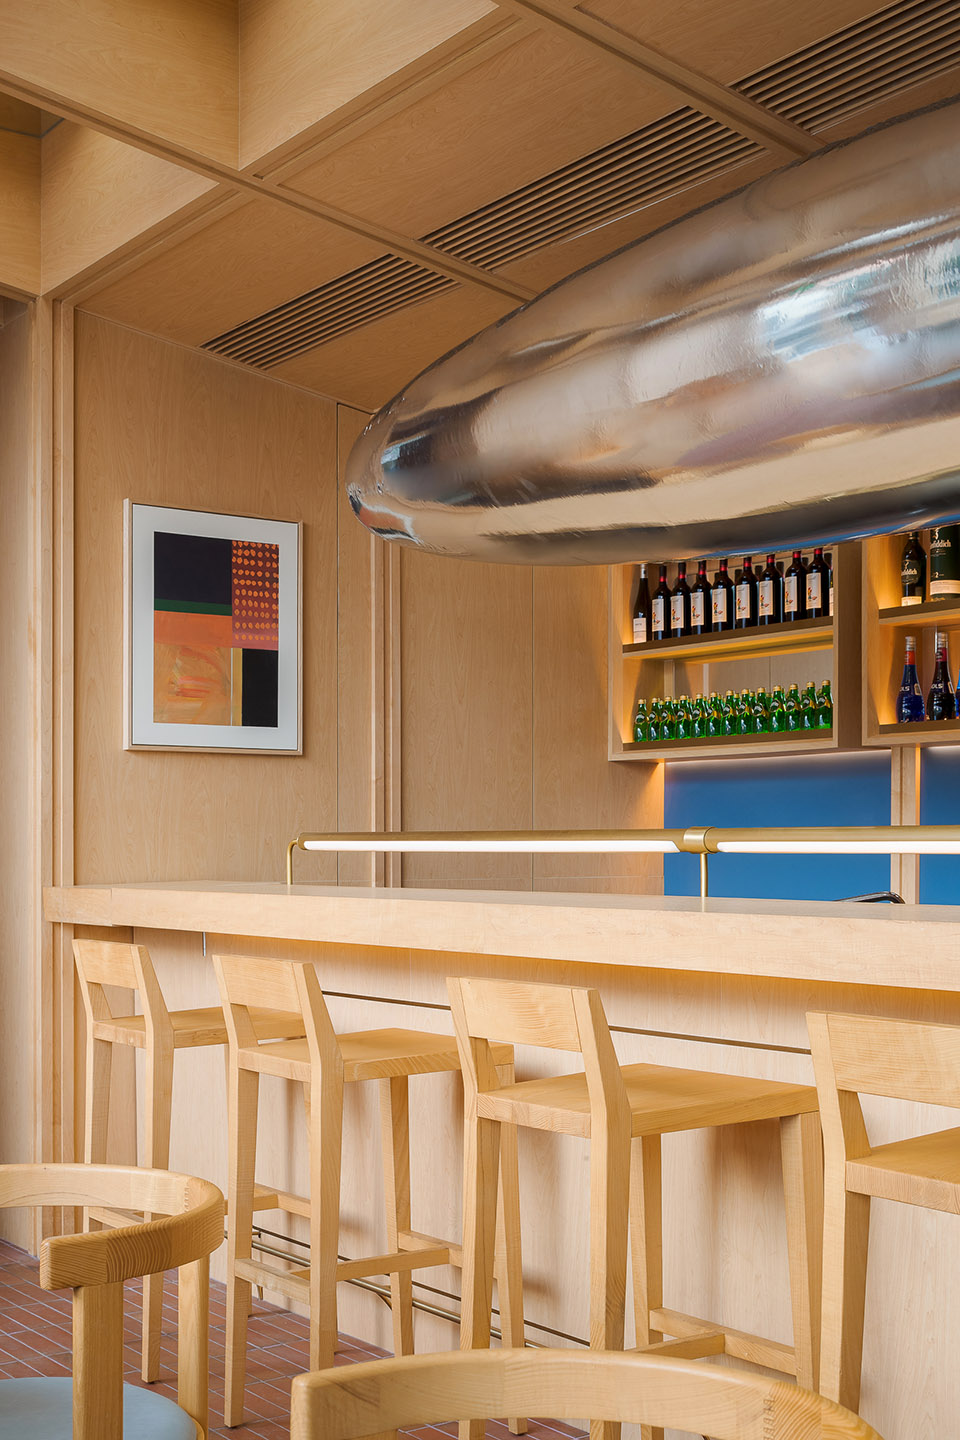 浮廊C2 Cafe &  Bar咖啡厅，深圳/专门为年轻人打造的“空中楼阁”-68